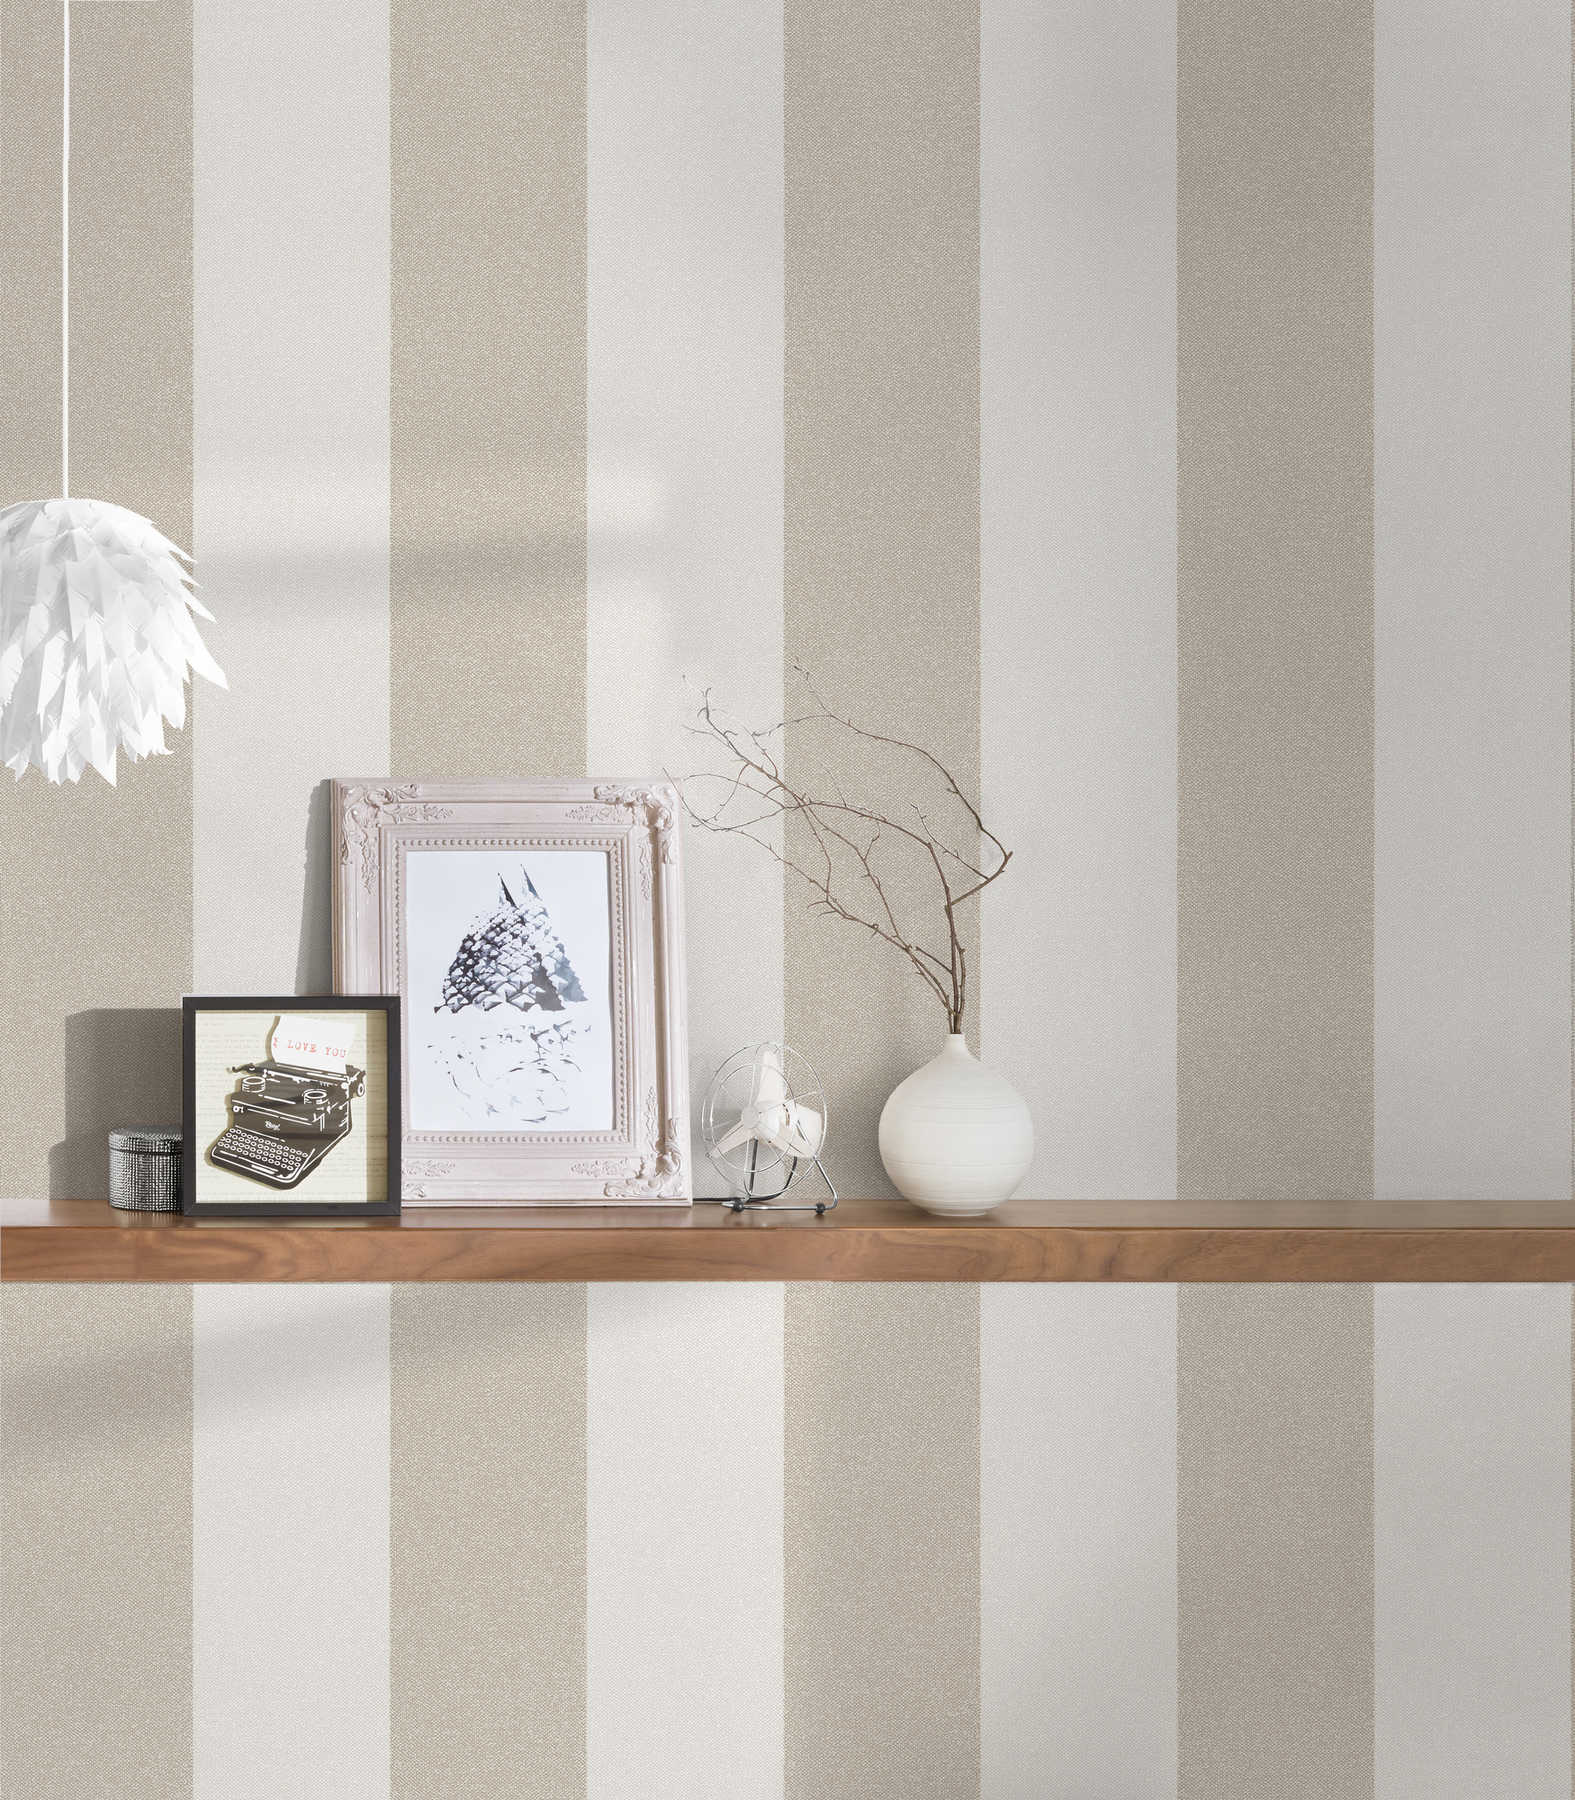             Block stripes wallpaper with linen look - brown, cream, beige
        